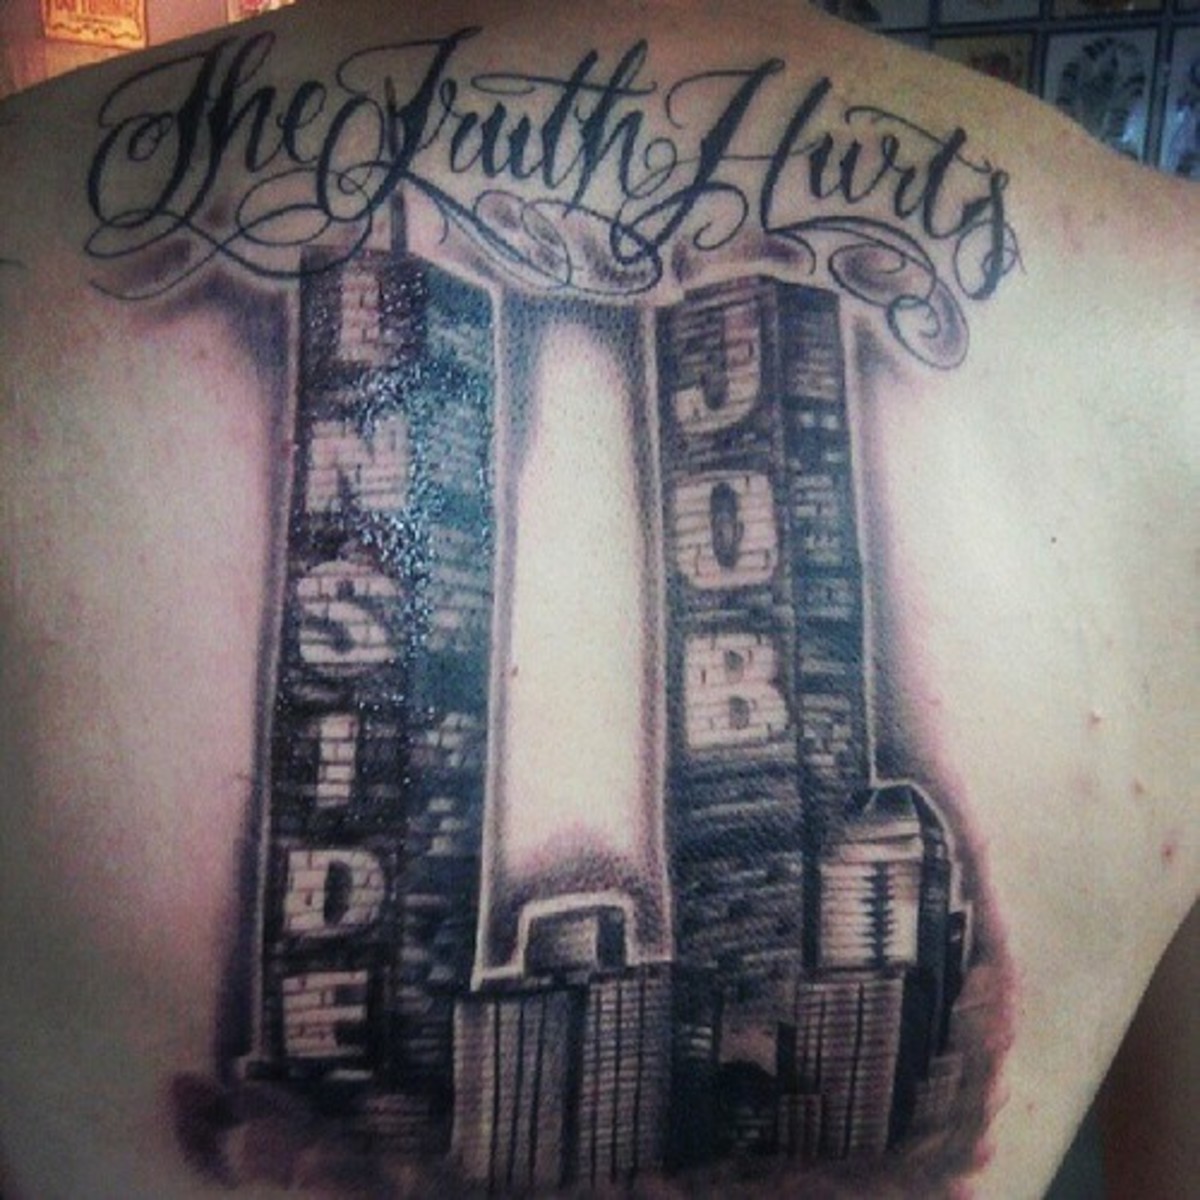 Legalábbis ez a szeptember 11 -i tetoválás annyira szívós, hogy nehéz megmondani, hogy ez a World Trade Center.